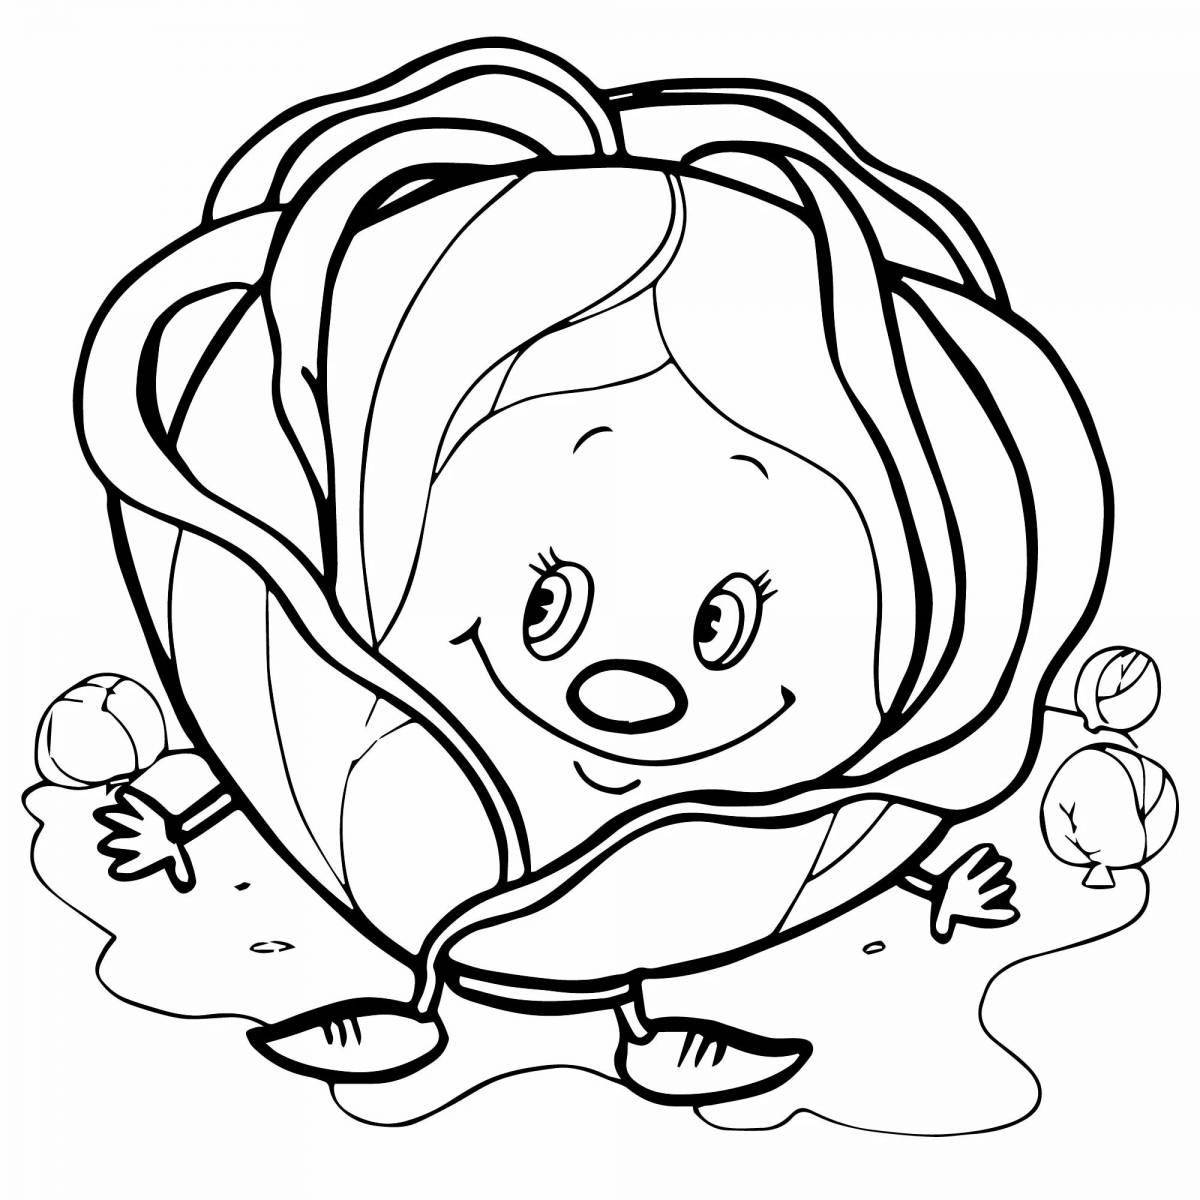 Радостный рисунок капусты для детей